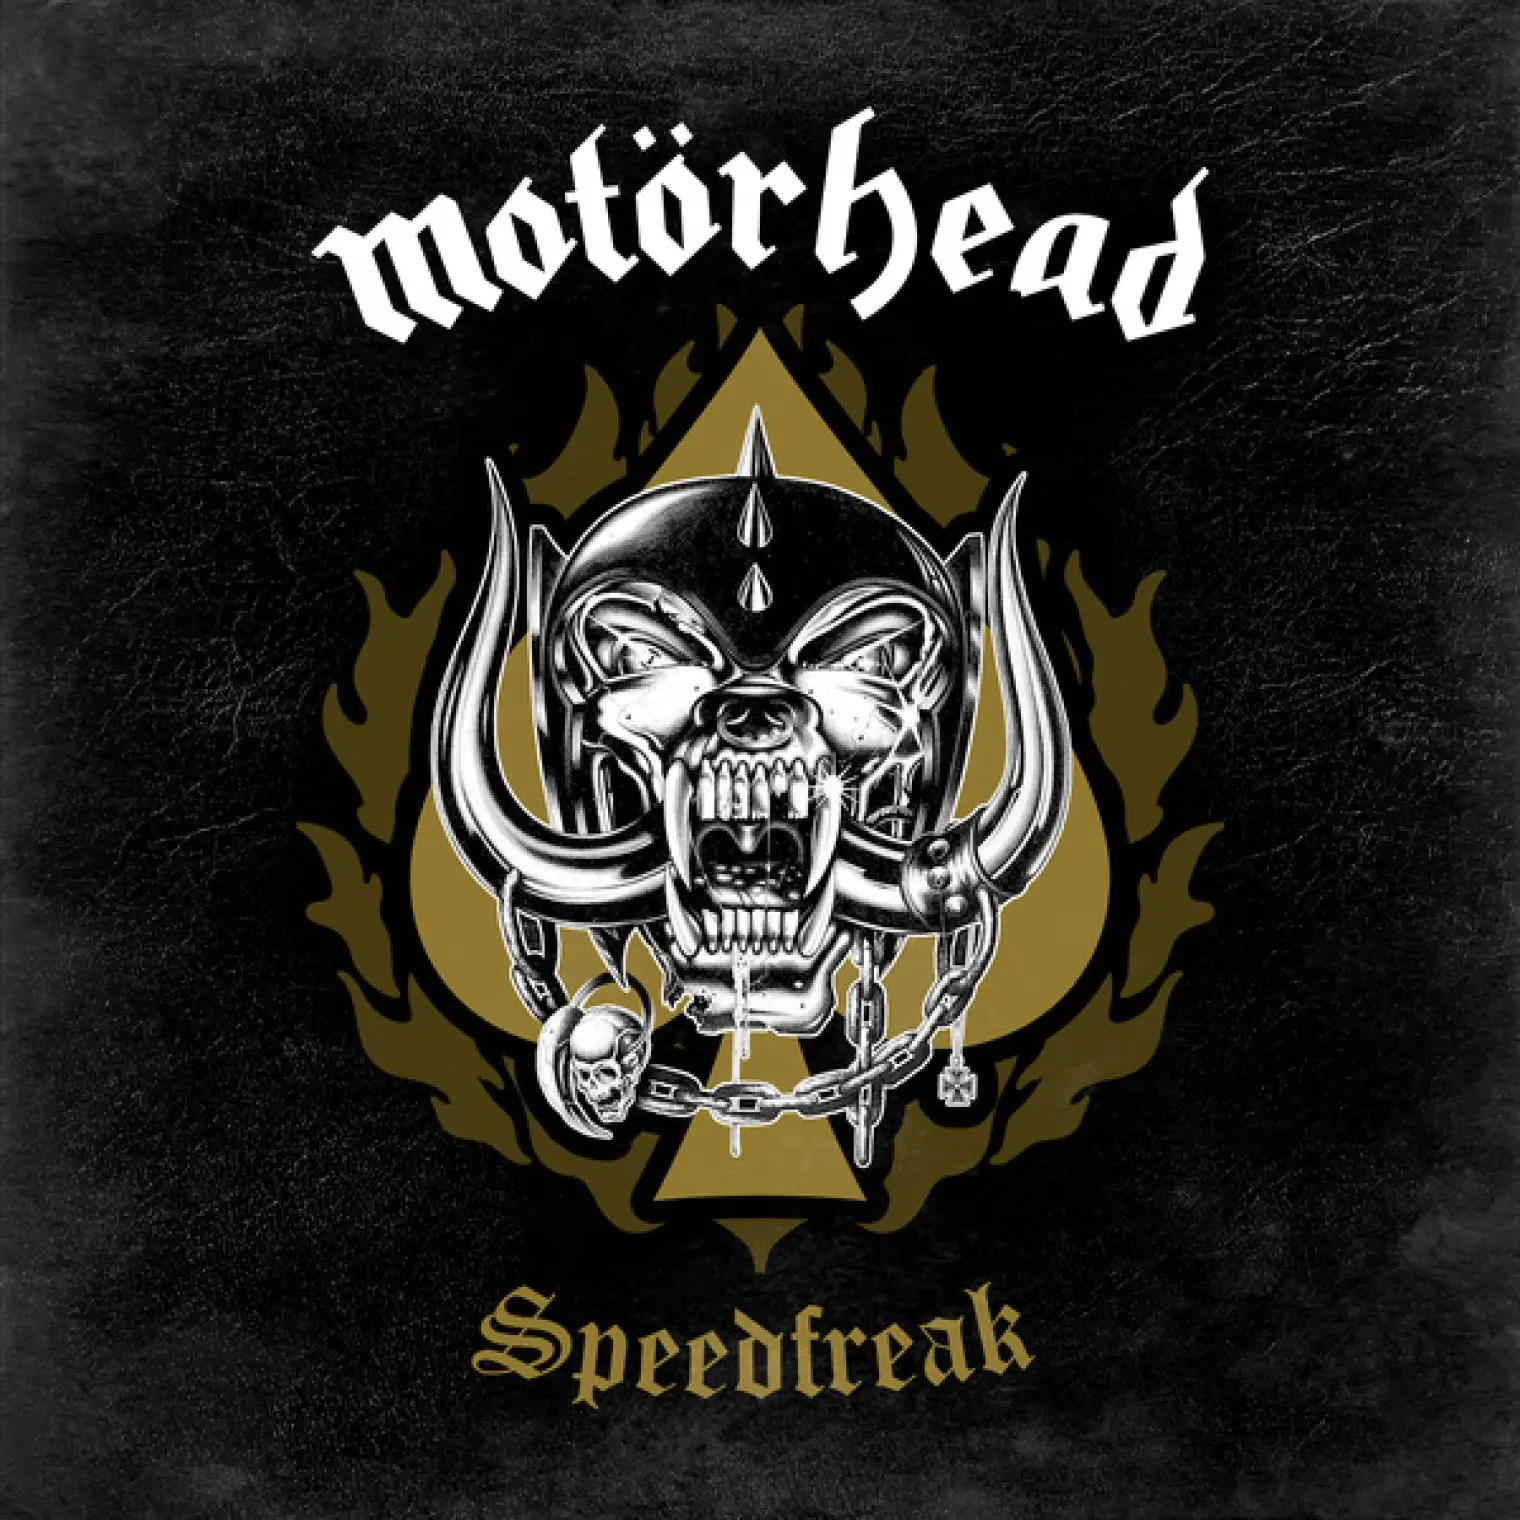 Speedfreak -  Motörhead 